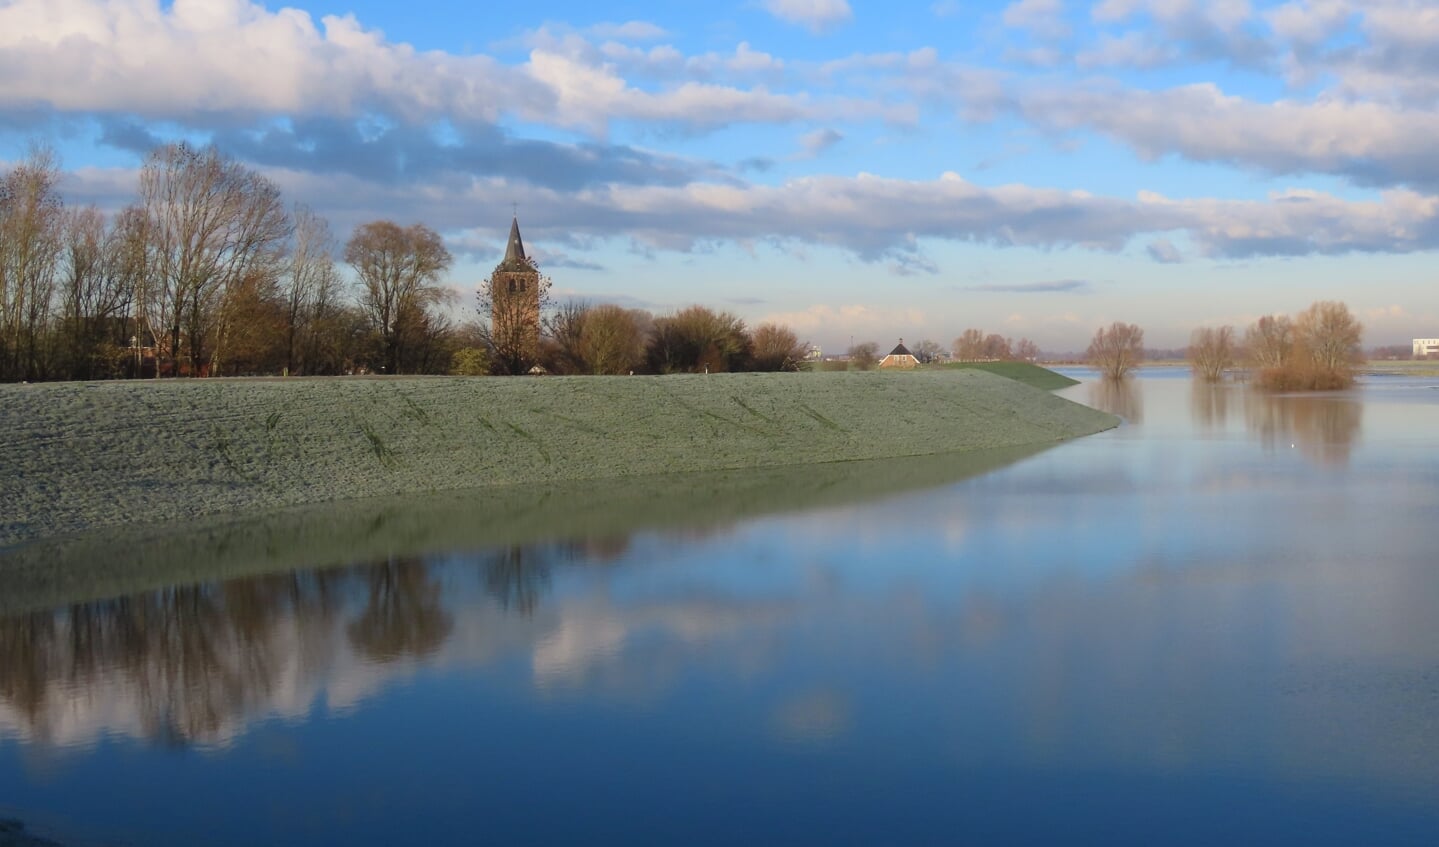 Ook bij Winssen de weilanden voor de dijk (vanaf de Waal) met water, mooie reflectie van wolken in het water.